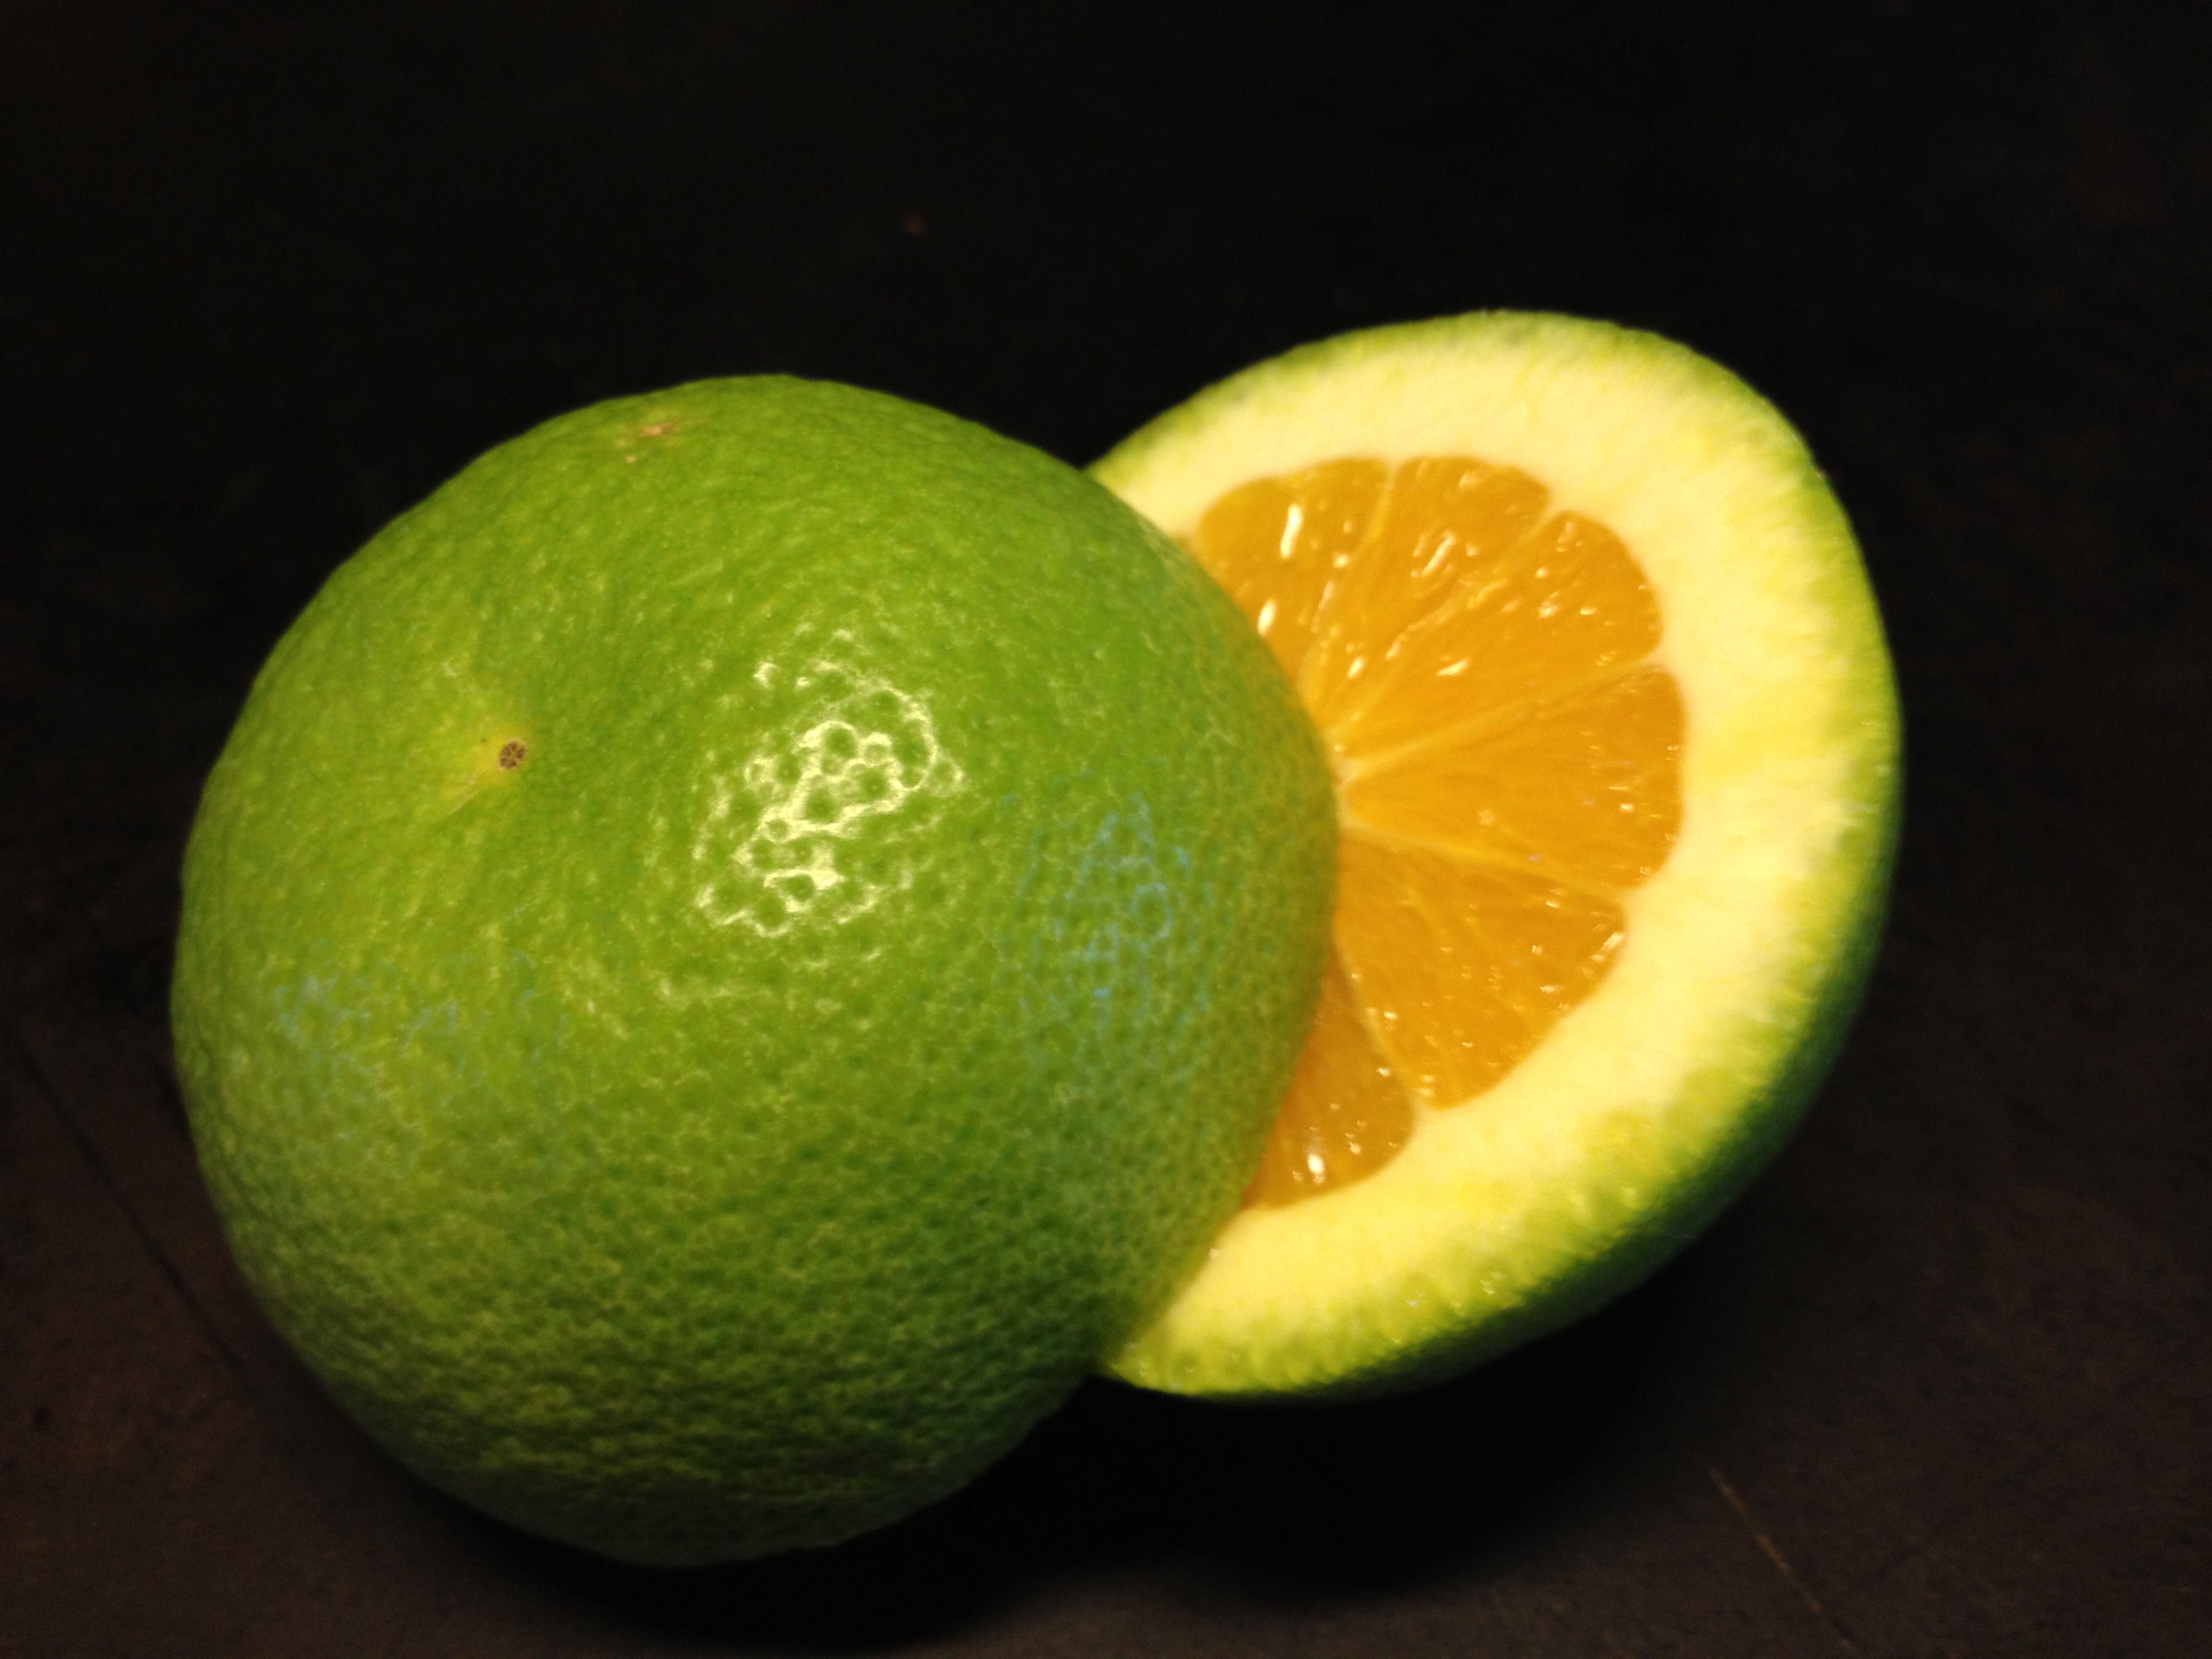 Green apelsin я у мамы. Зеленый апельсин. Грин апельсин. Бразильские апельсины зеленые. Зеленый апельсин как называется.